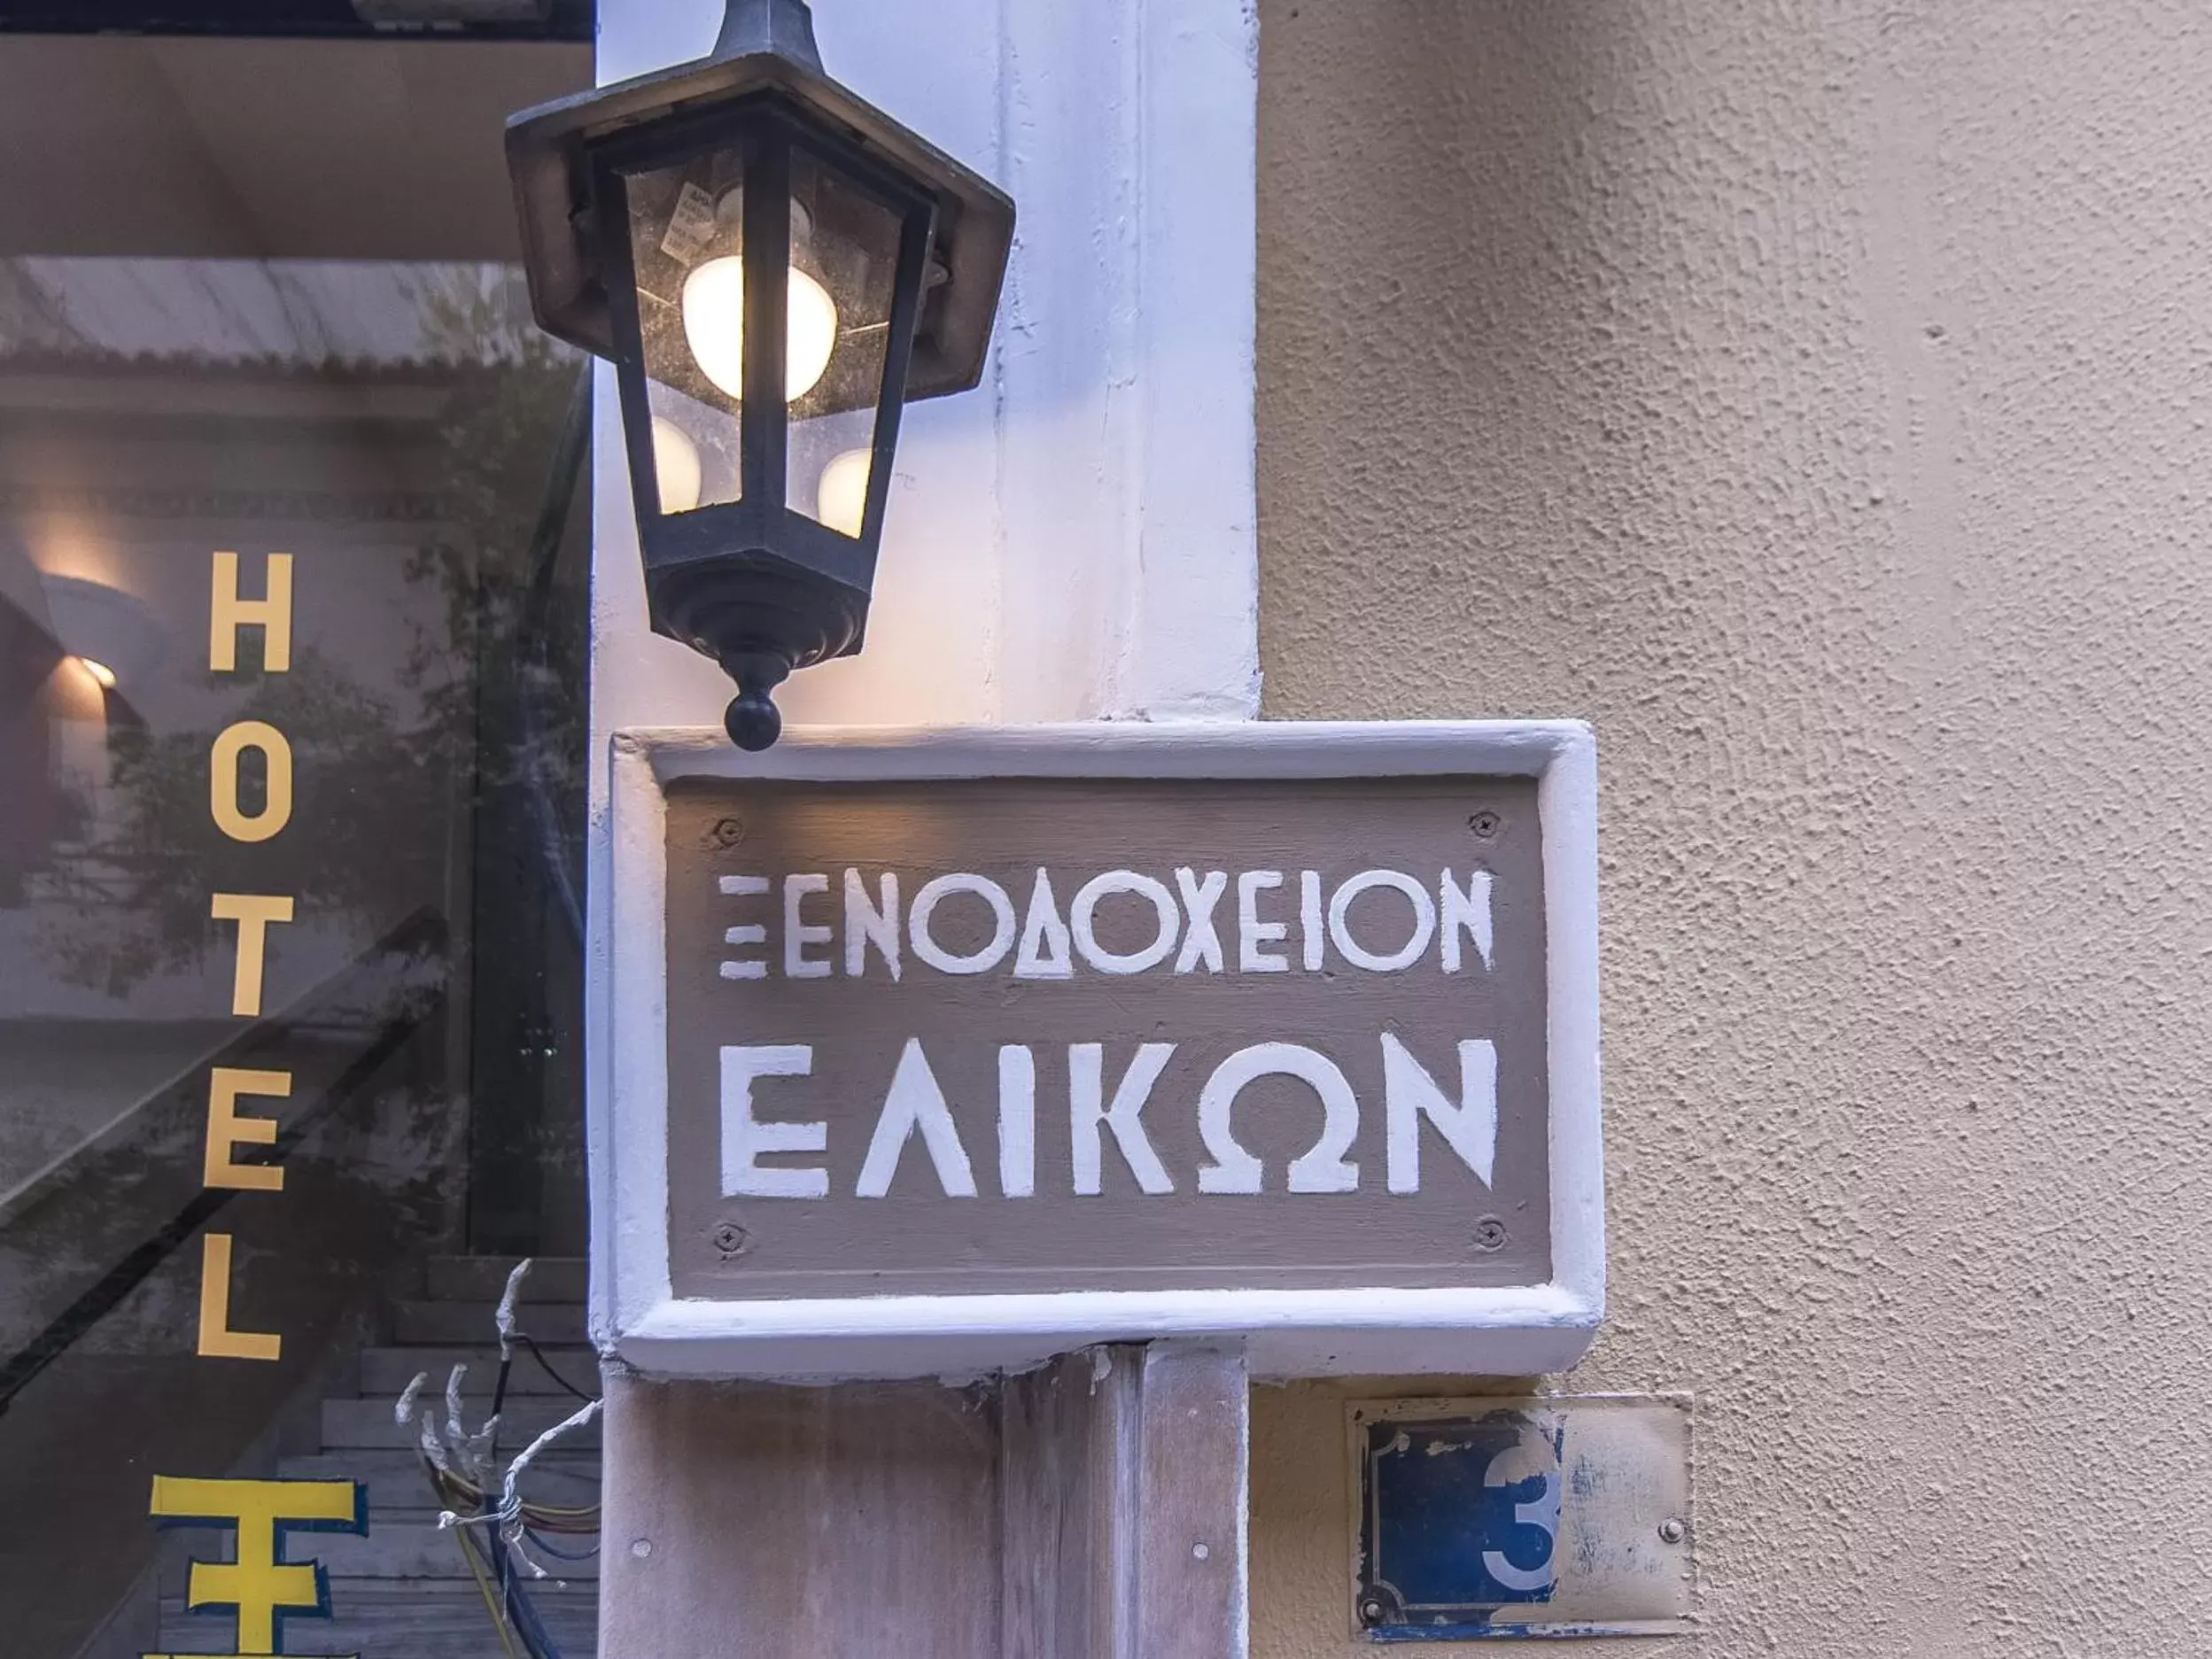 Property logo or sign in Elikon